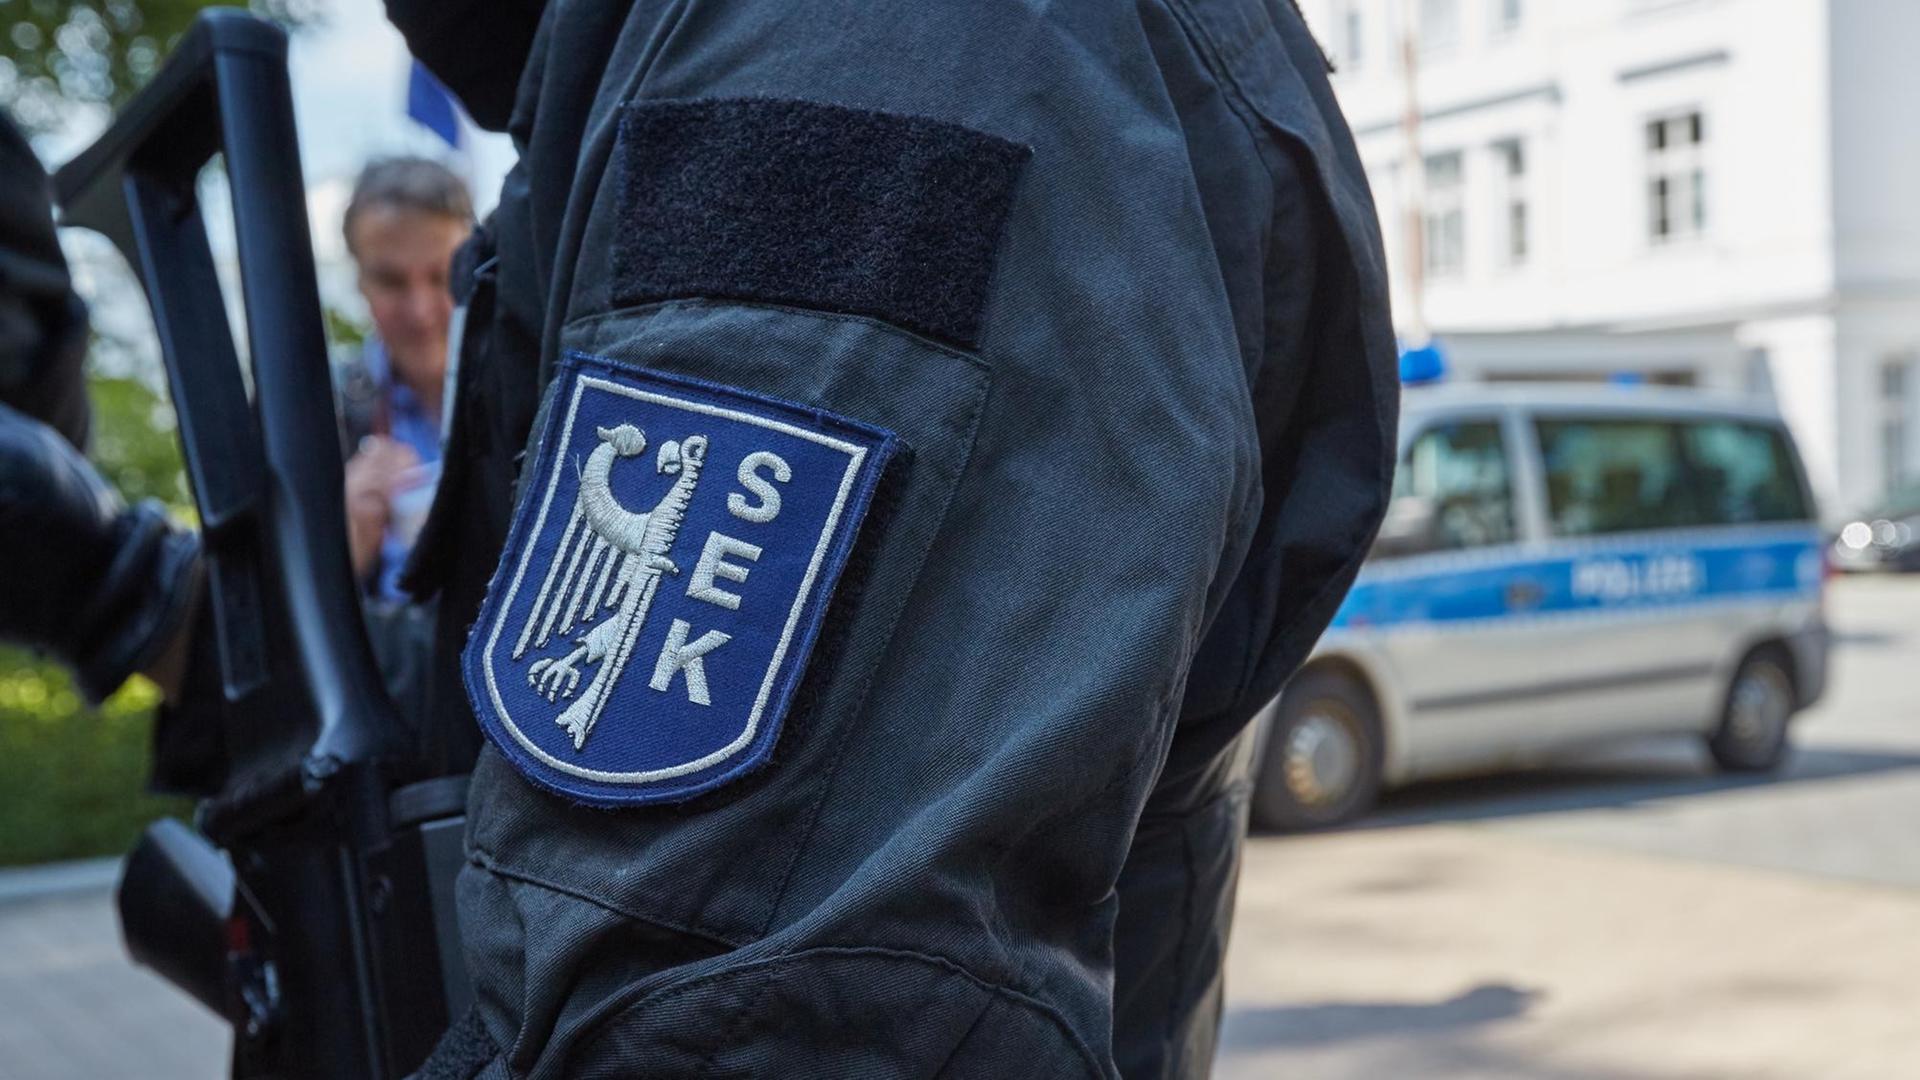 SEK-Abzeichen an der Uniform eines Polizisten eines Sondereinsatzkommandos, aufgenommen in Heiligendamm (Mecklenburg-Vorpommern)